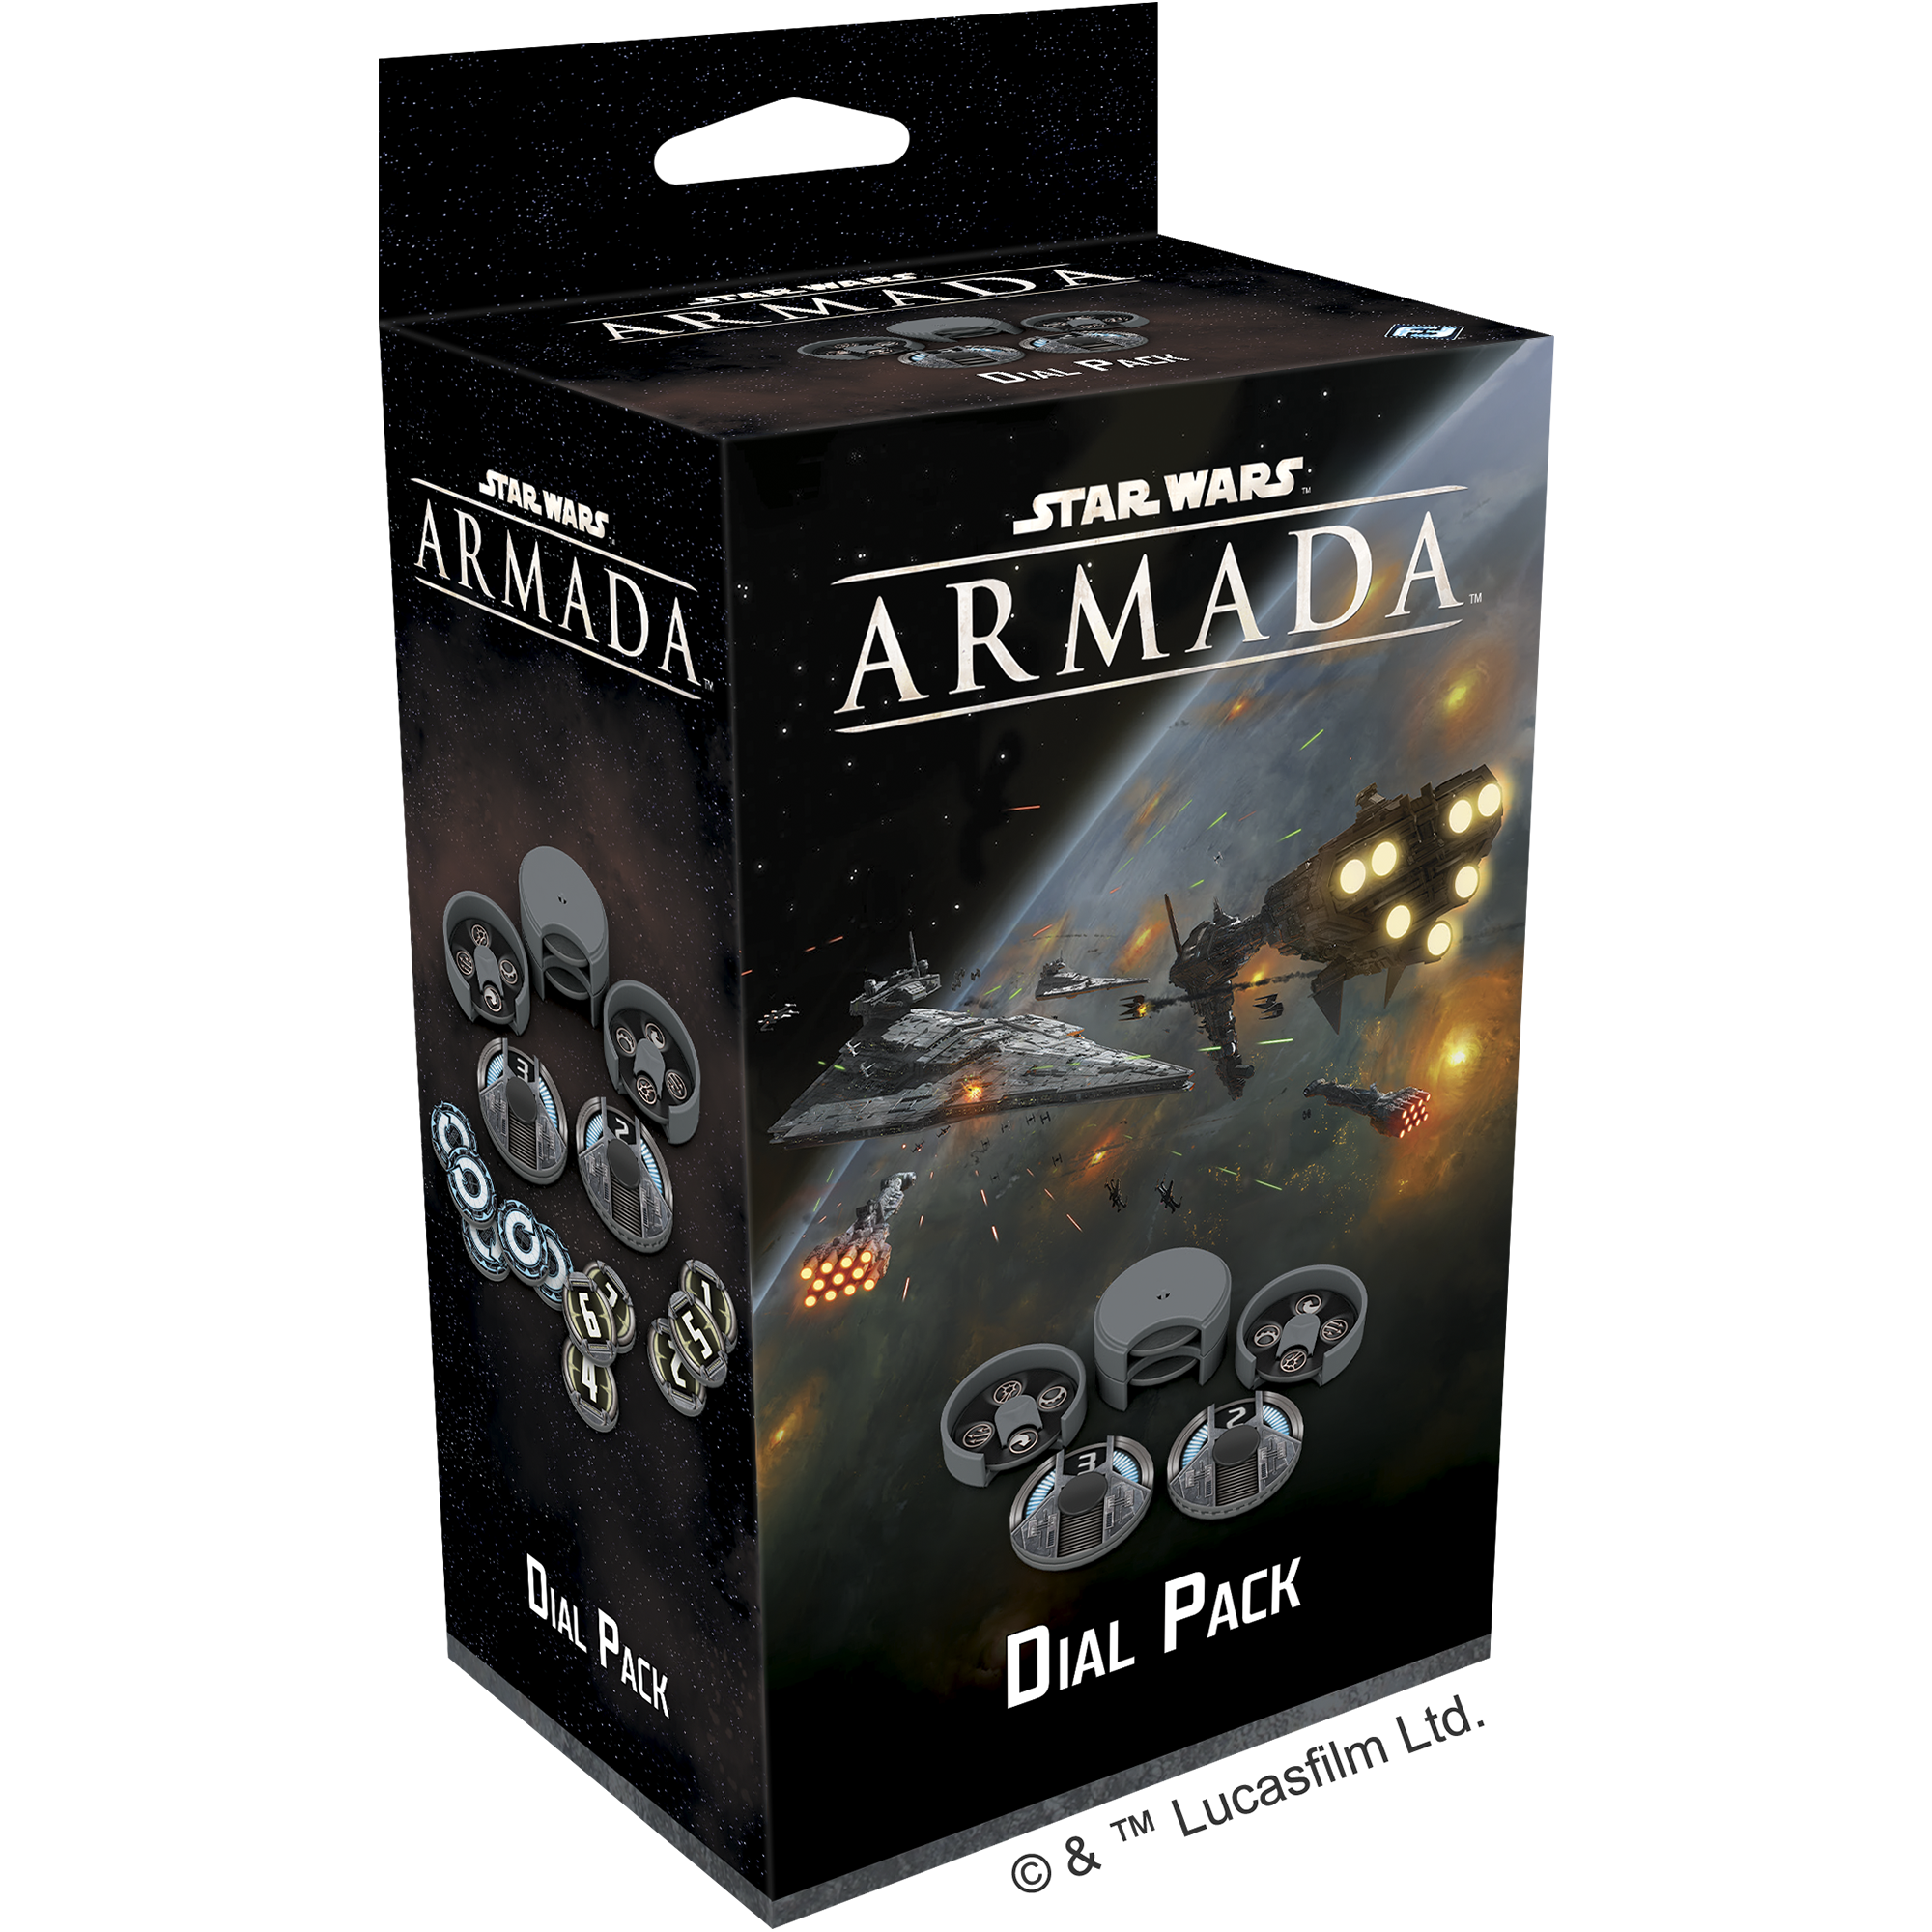 Star Wars Armada: Dial Pack 